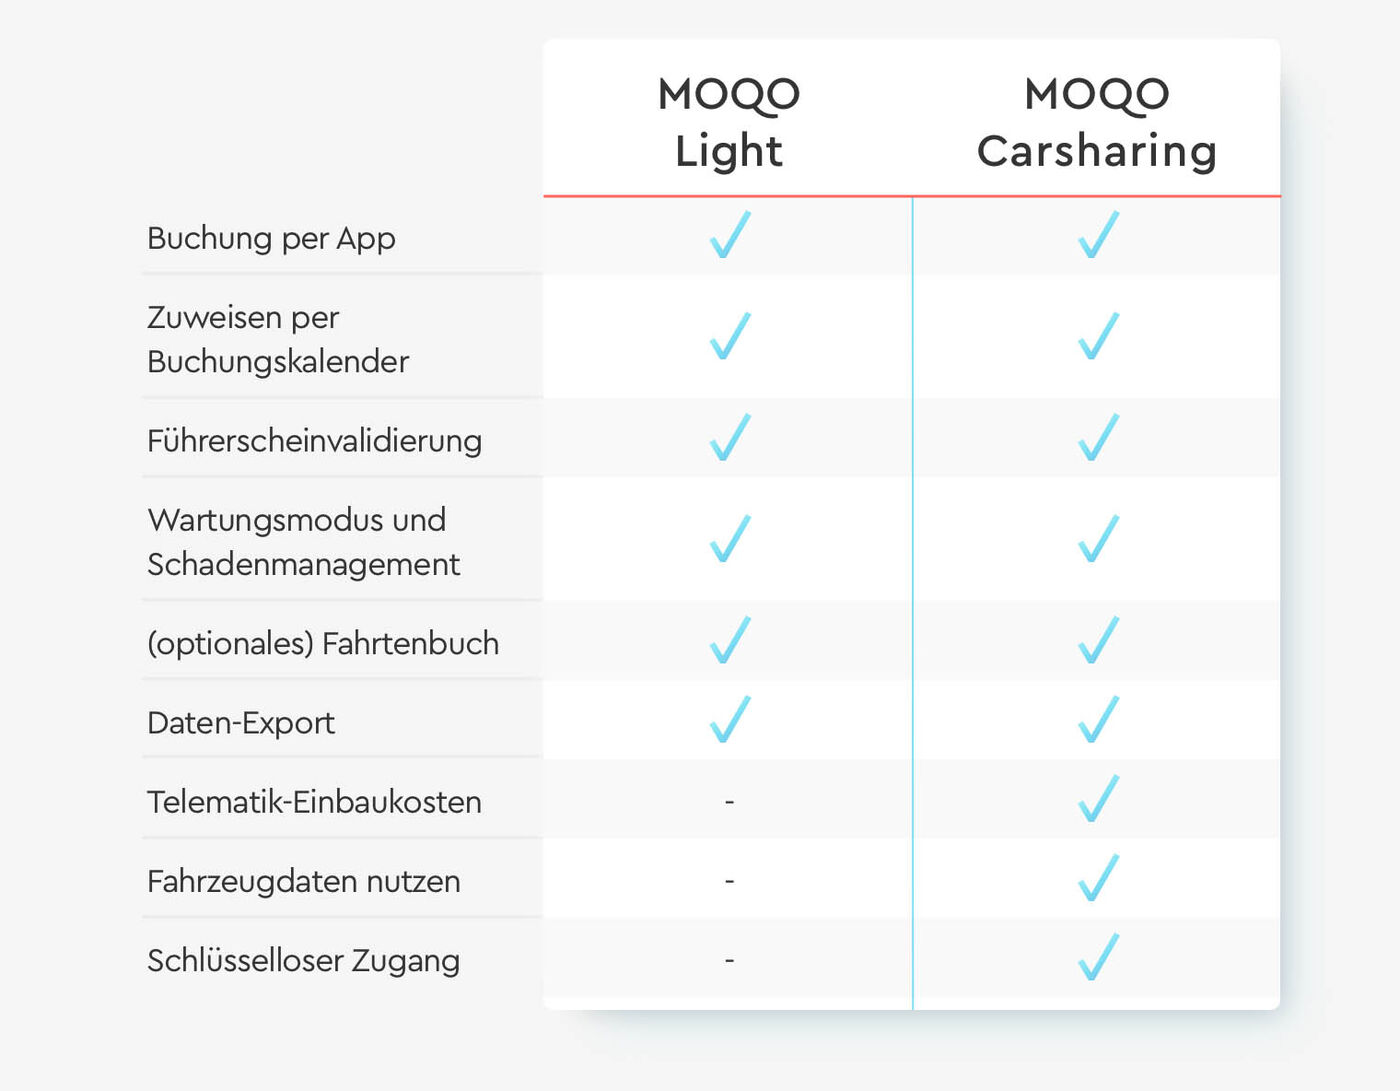 MOQO Light im Vergleich mit anderen Produkten